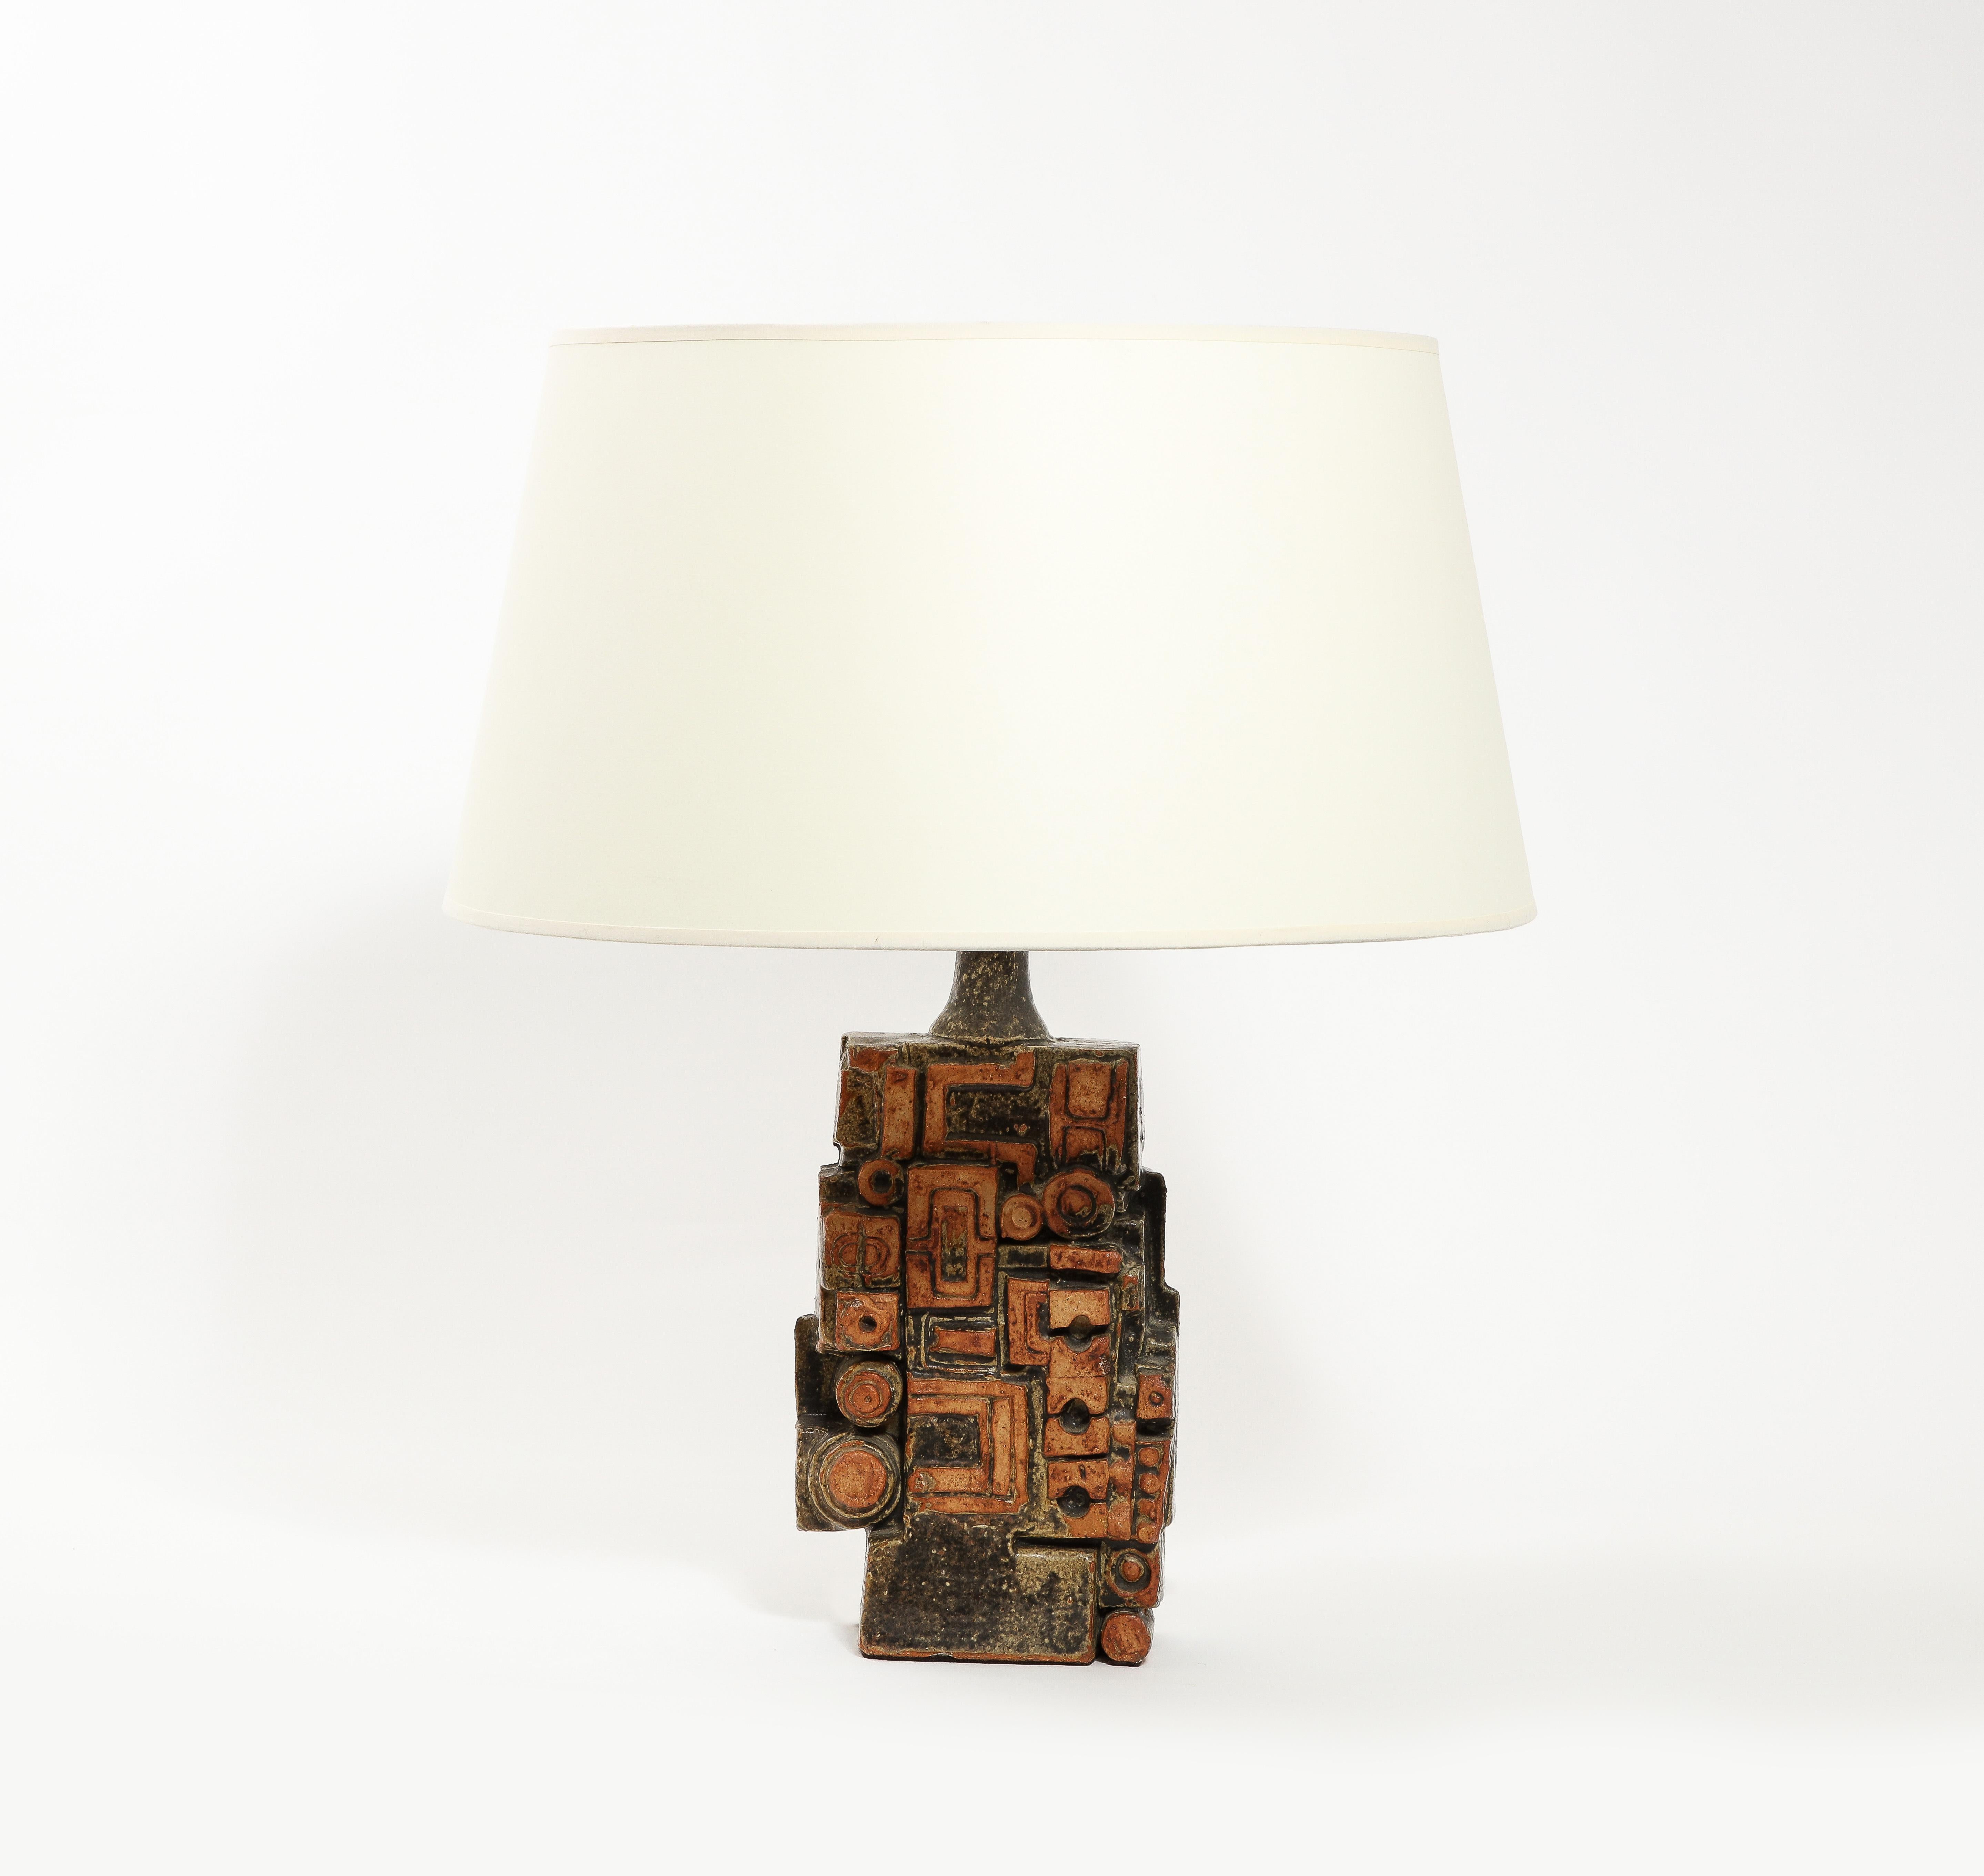 Lampe de table brutaliste de Bernard Rooke avec un motif maya, une finition texturée et une glaçure verte et ocre nuancée. Taille de la base uniquement. Pas d'abat-jour inclus.